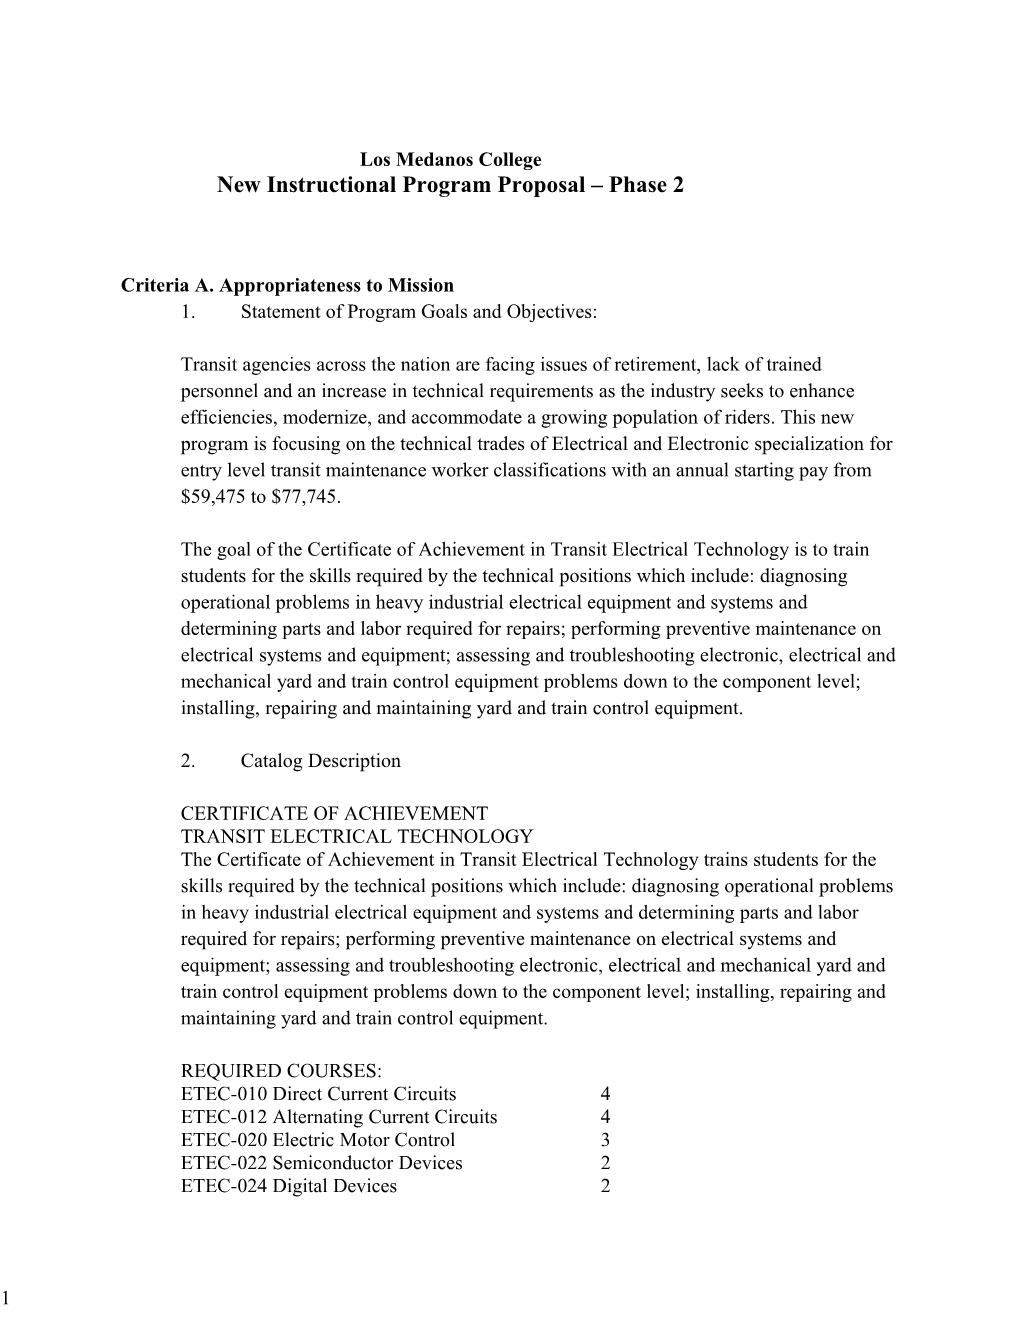 New Instructional Program Proposal Phase 2